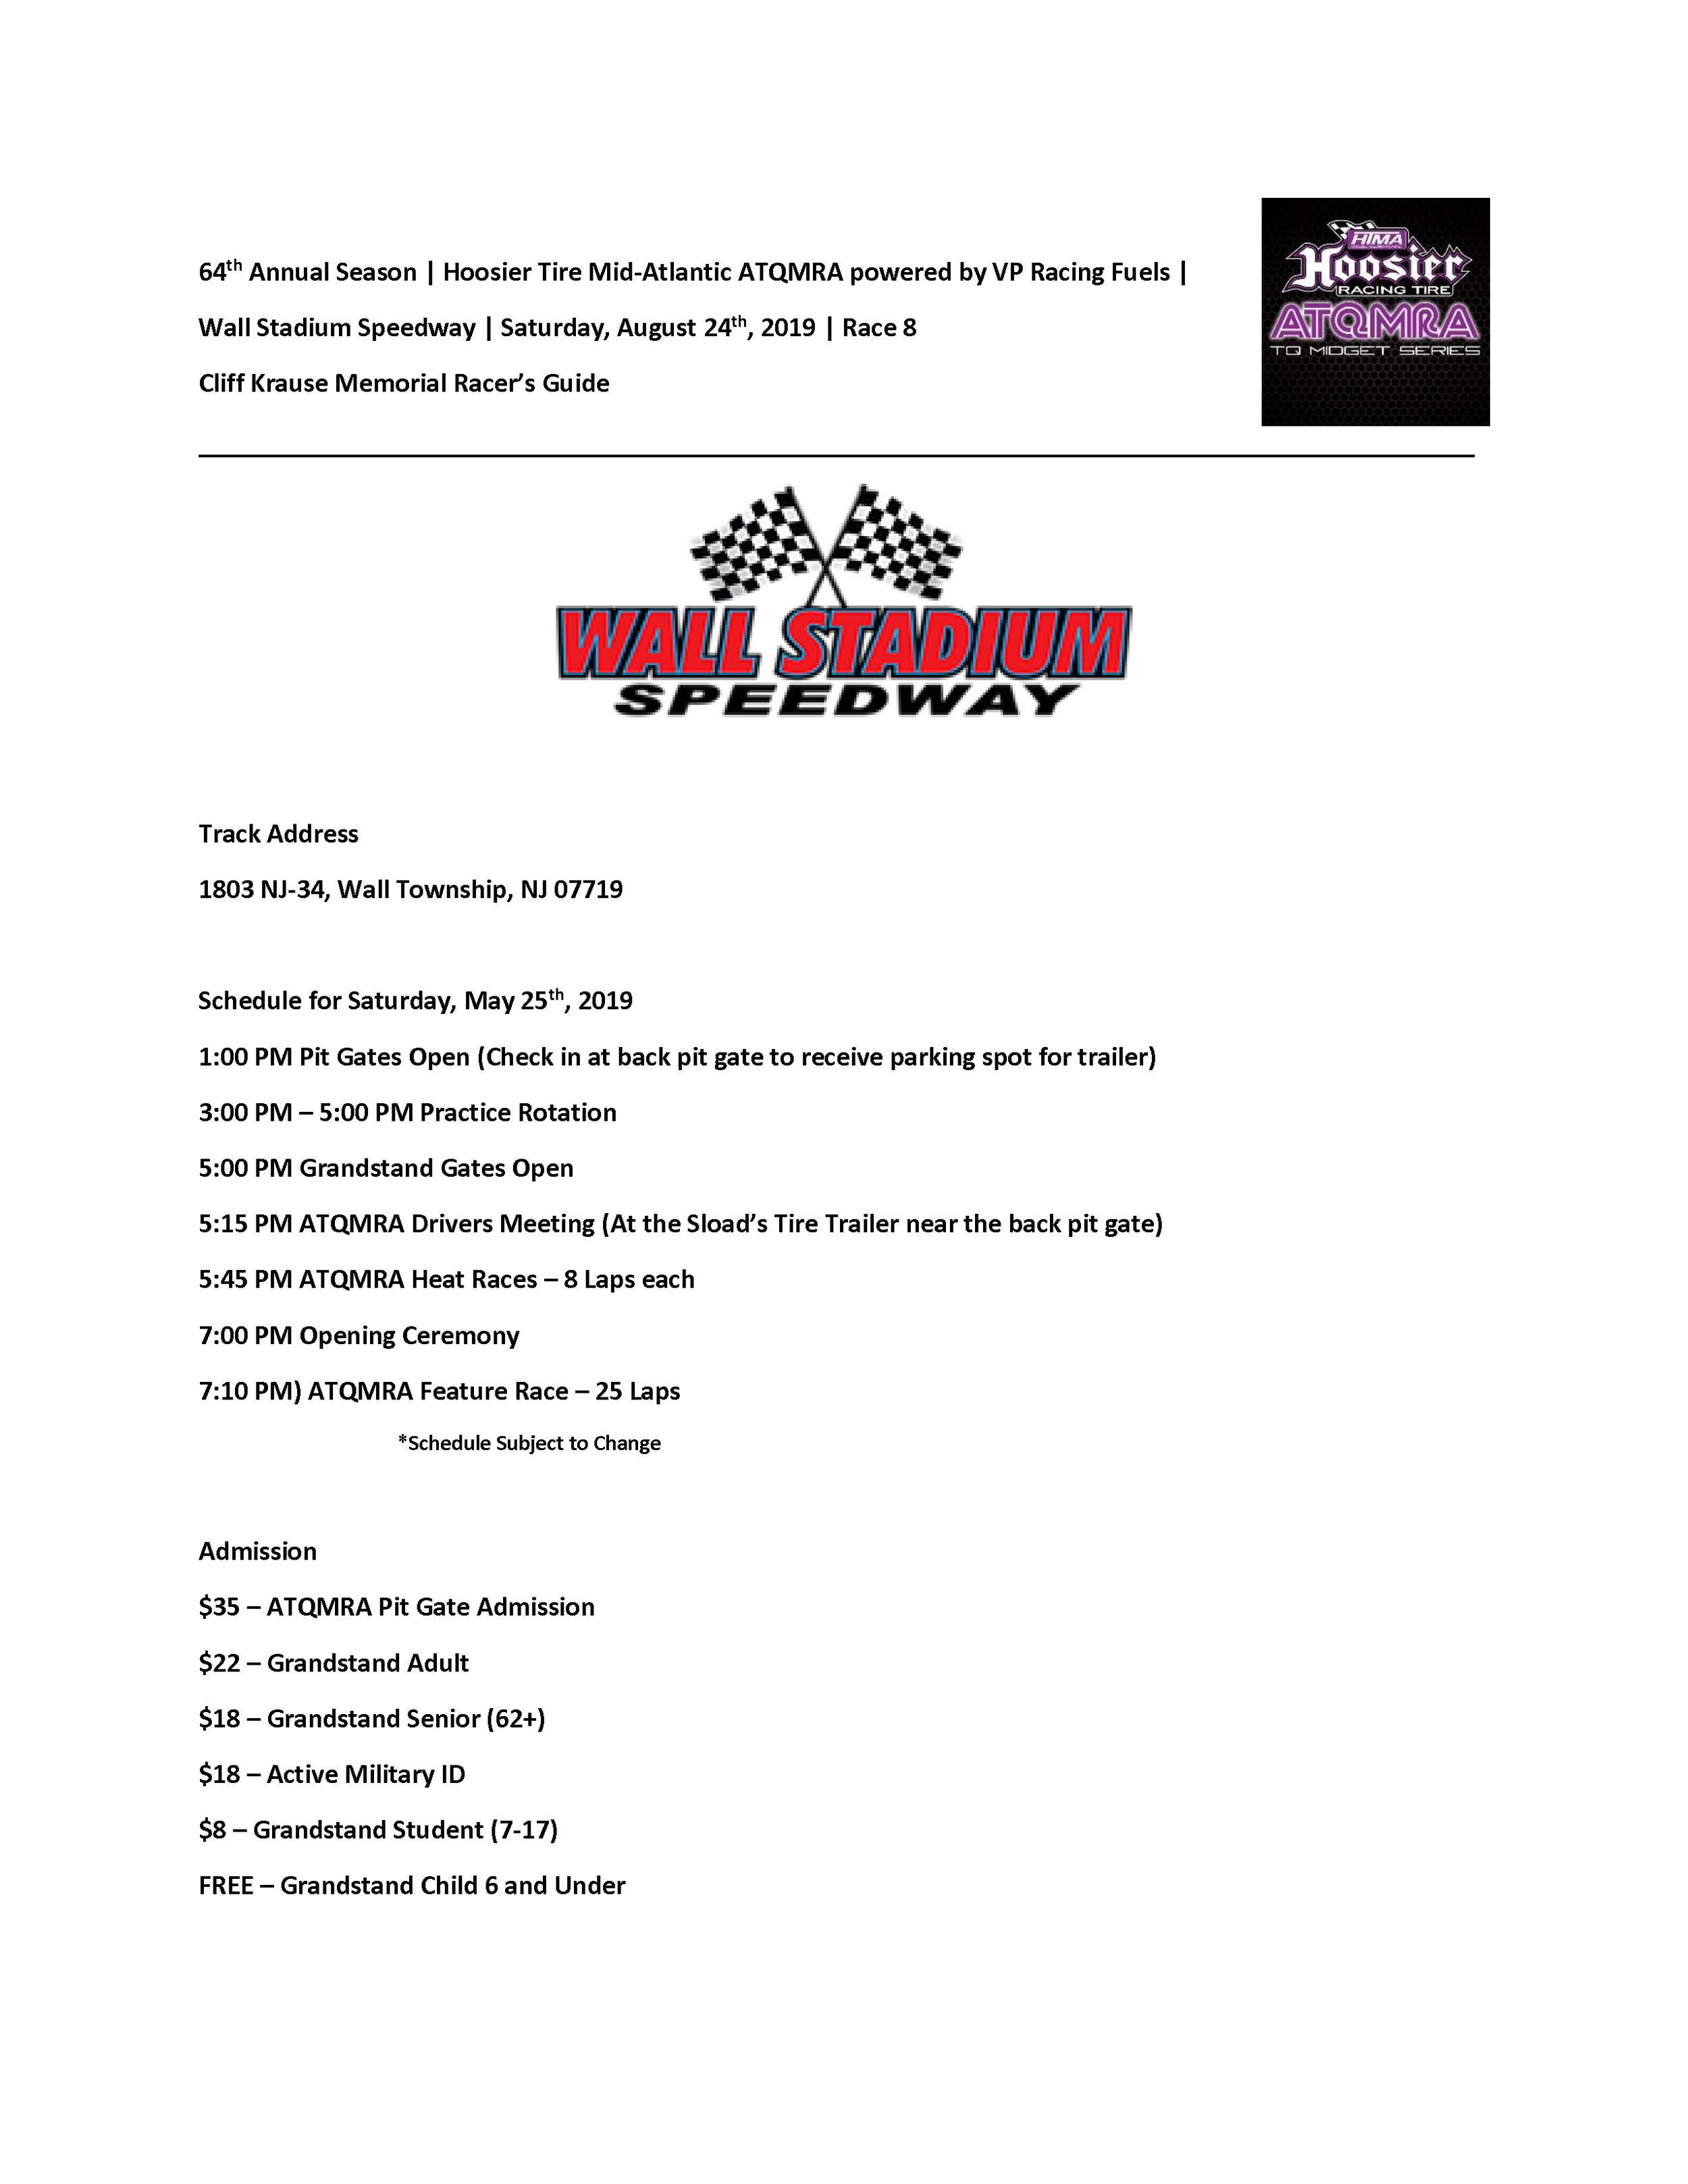 Wall Stadium Speedway Schedule August 24, 2019 Race 8 — ATQMRA